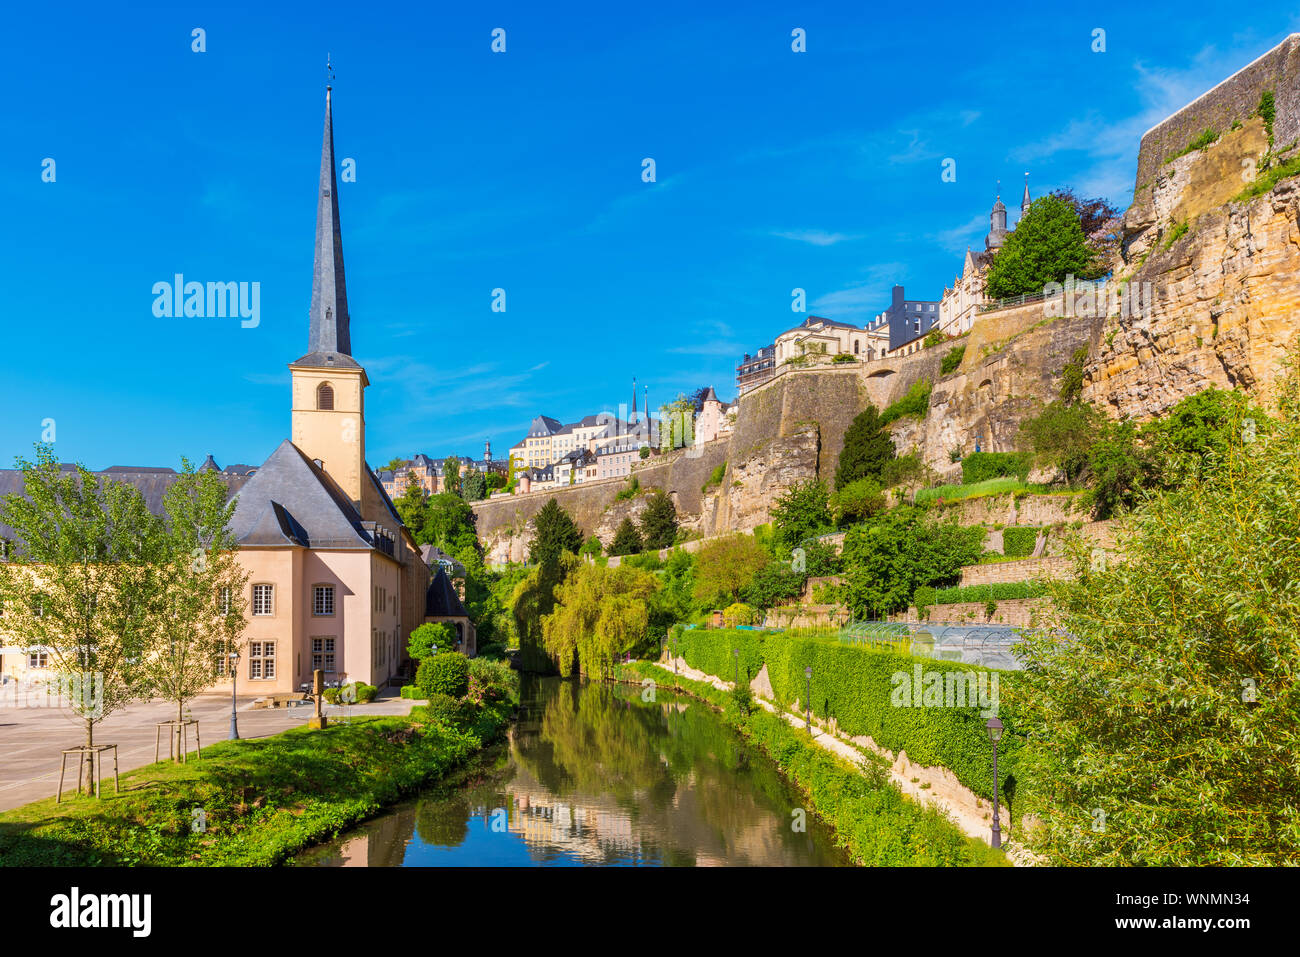 La Chiesa lungo il fiume Alzette nel quartiere del centro della città di Lussemburgo, la capitale del Lussemburgo Foto Stock